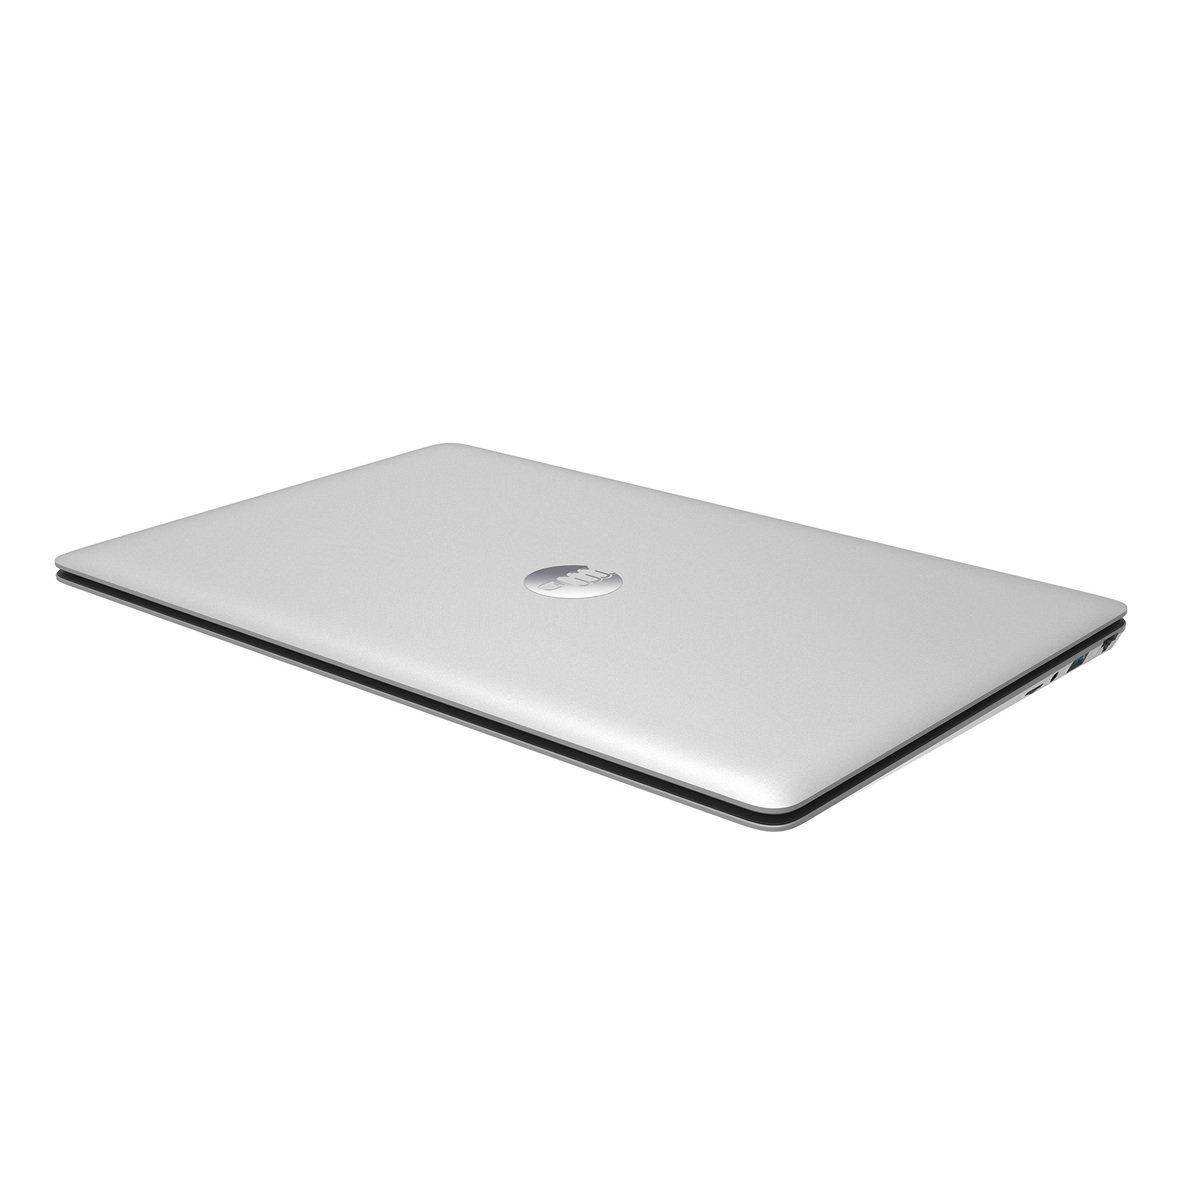 I-Life Zed Air CX5-4256 Notebook, Intel Core i5-5257U, 4GB RAM, 256GB SSD, 15.6" FHD Display, Windows 10, Silver